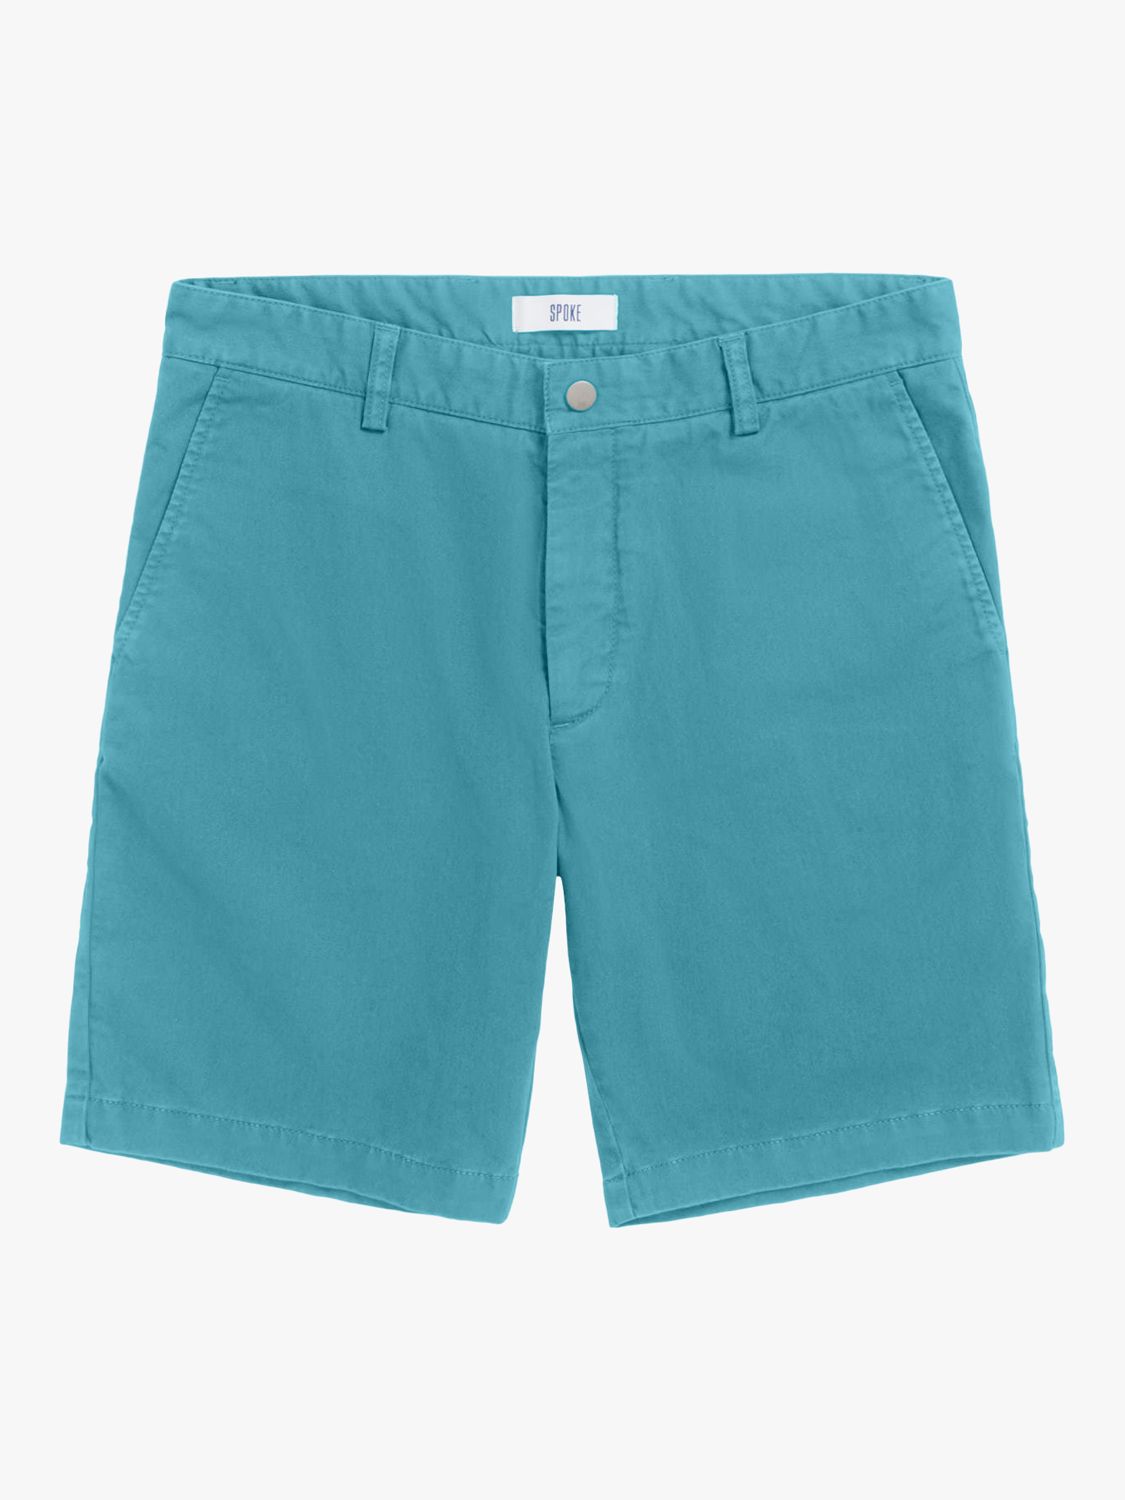 SPOKE Hero Regular Thigh Chino Shorts, Lagoon, 35S